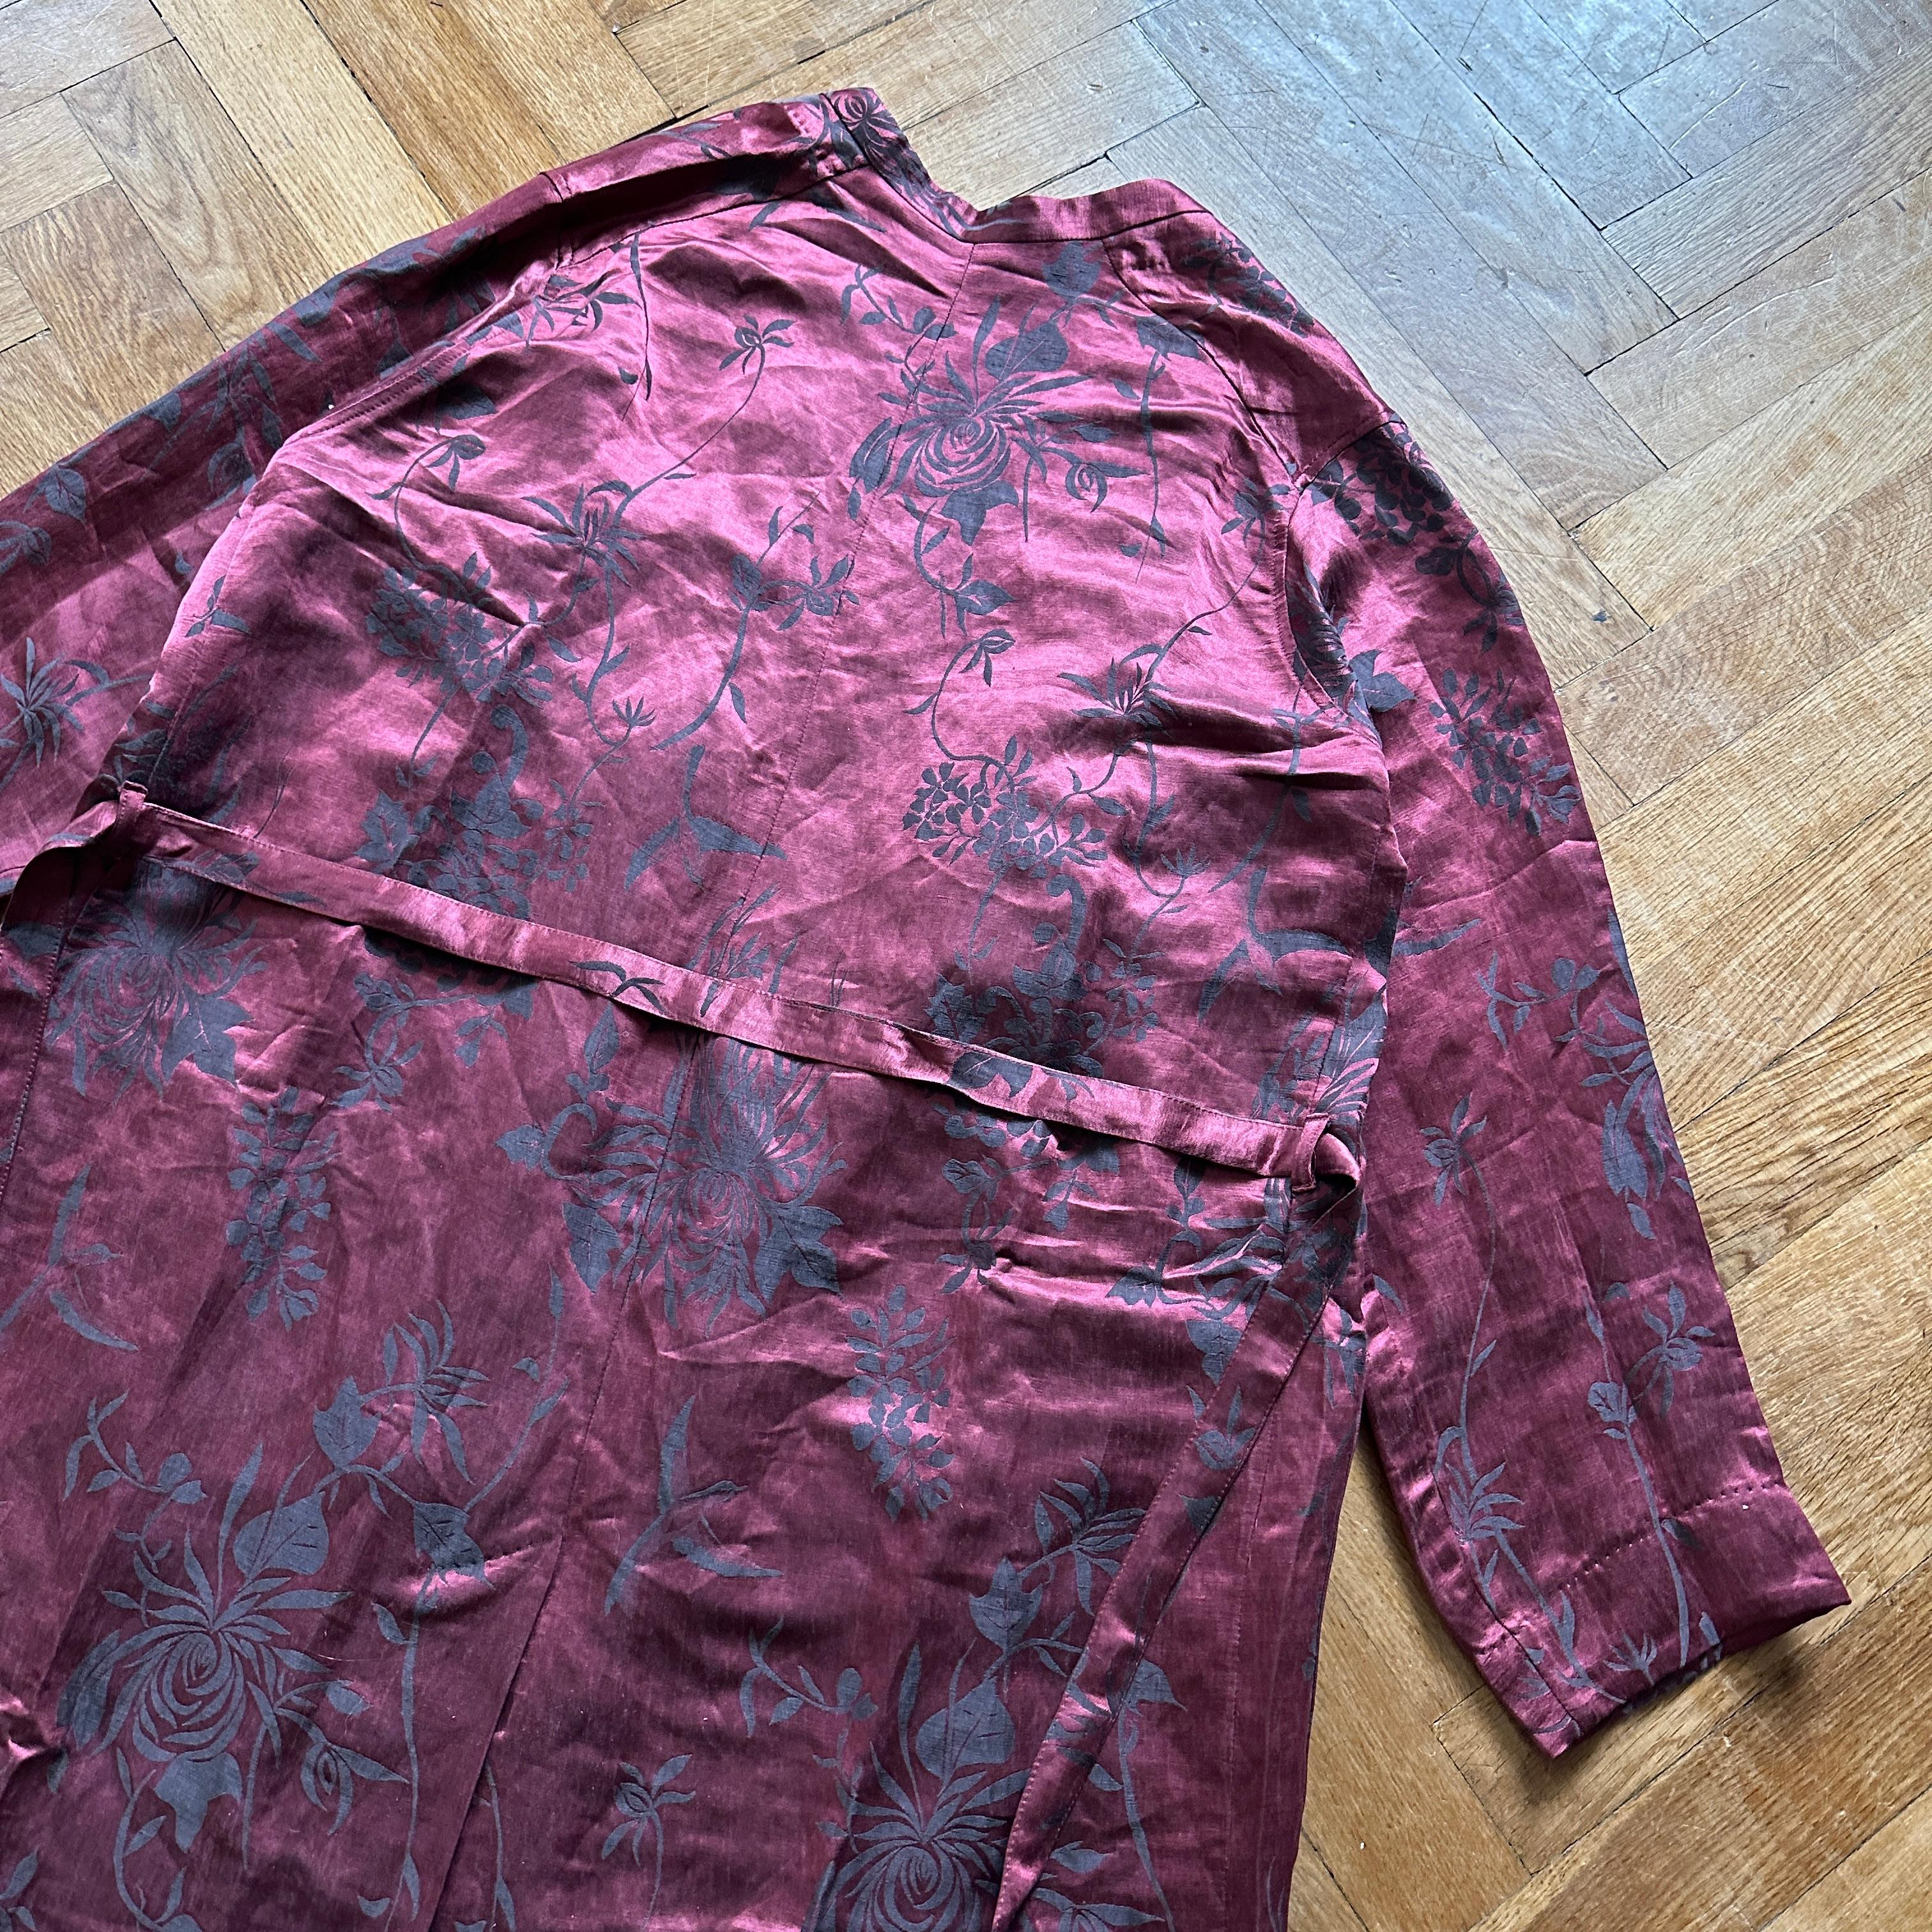 Haider Ackermann Floral Linen/Silk Blend Kimono Coat from Spring/Summer 2015.